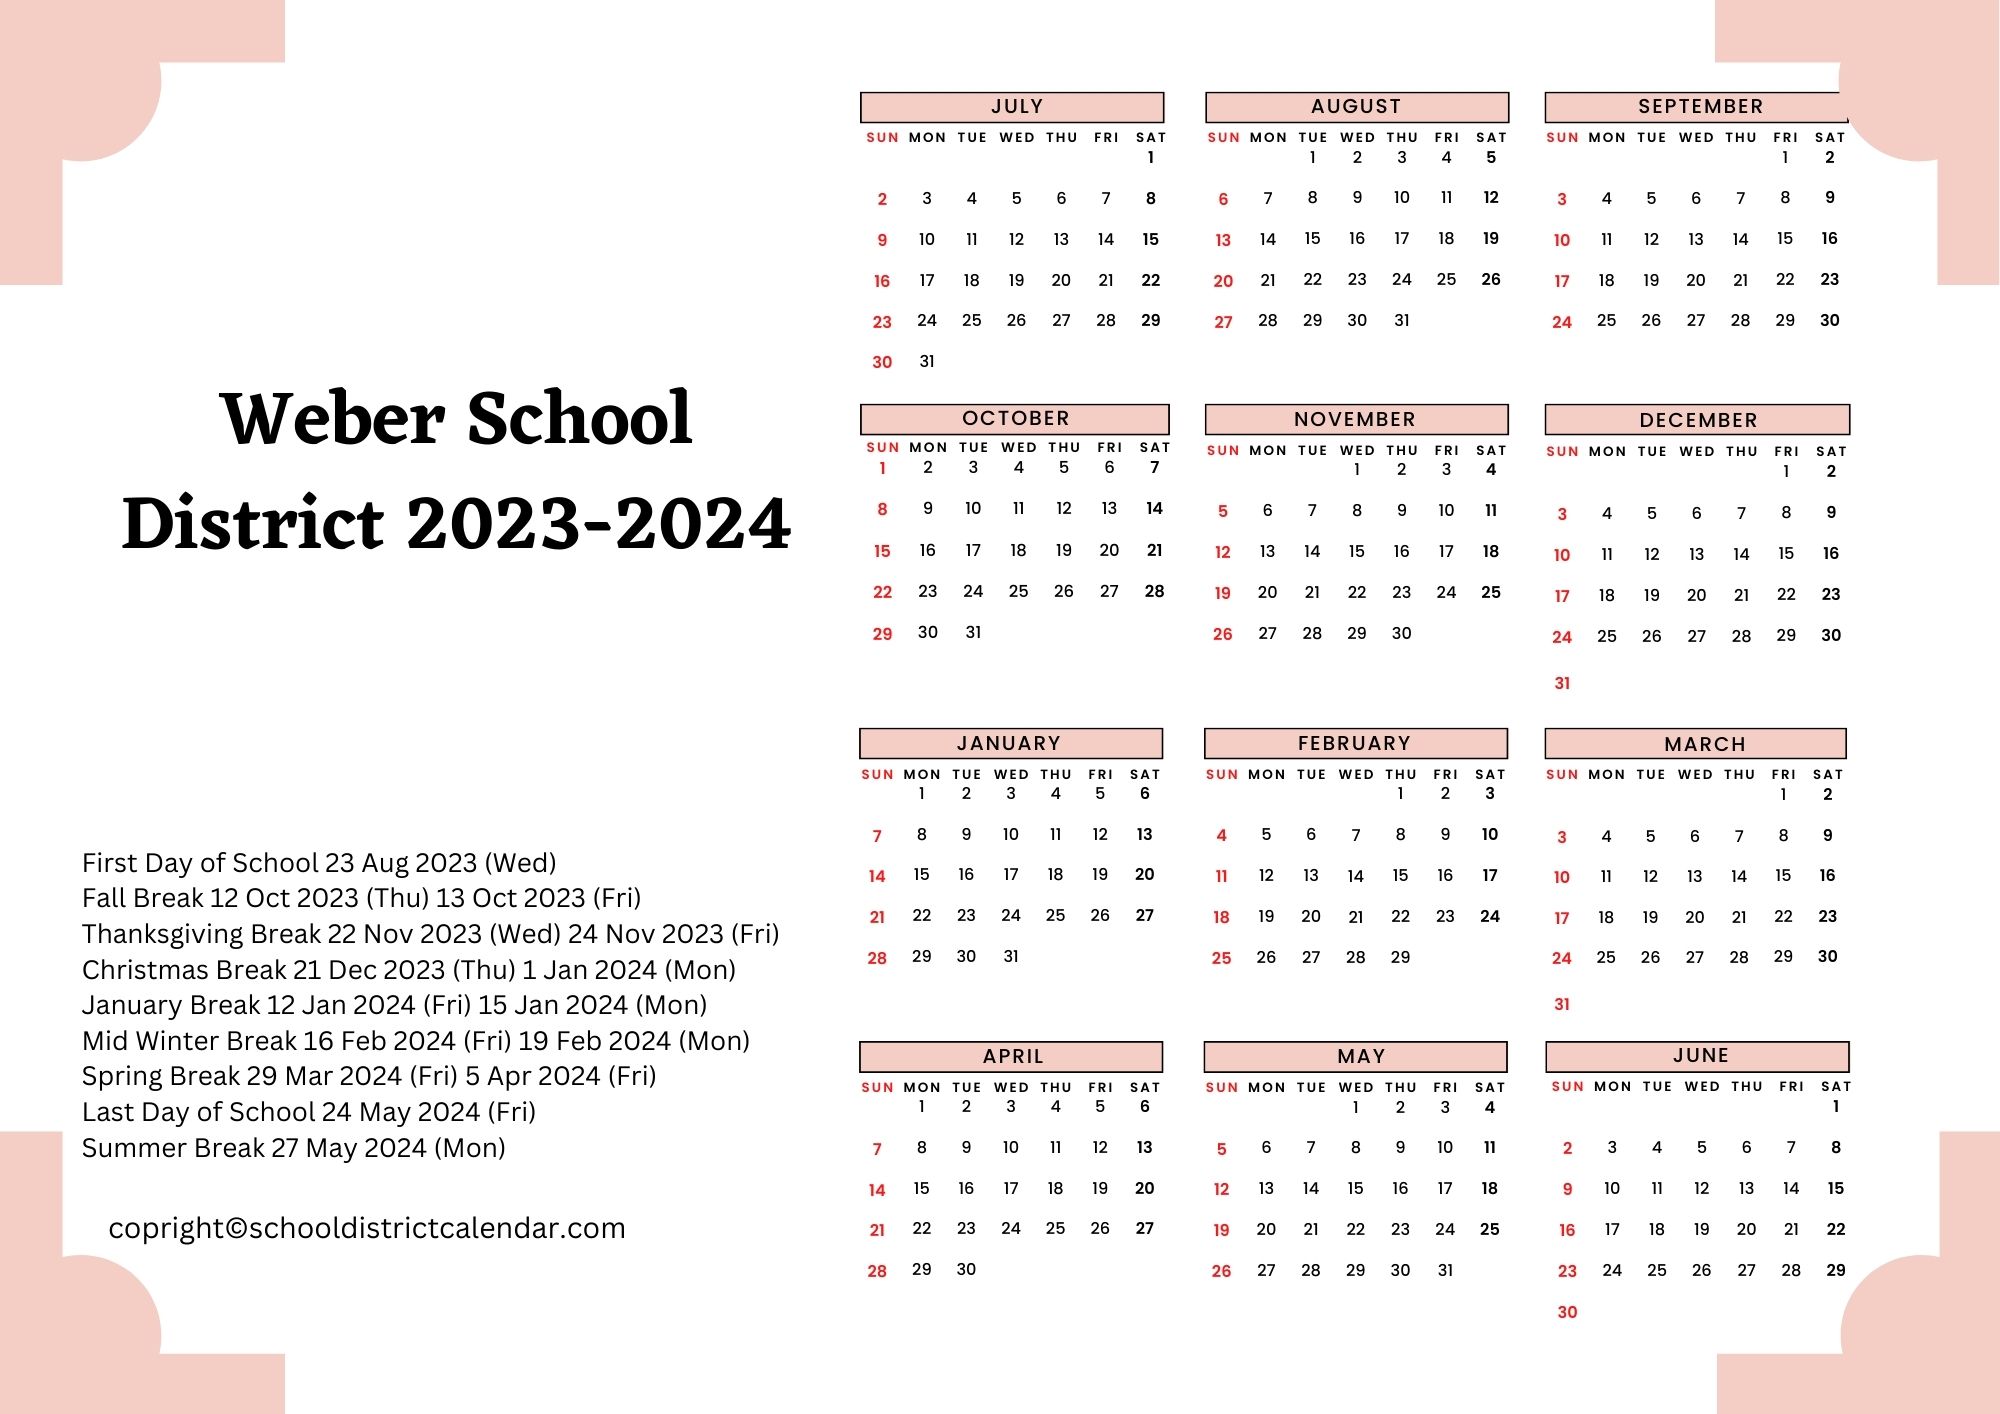 Weber School District Calendar Holidays 2023-2024